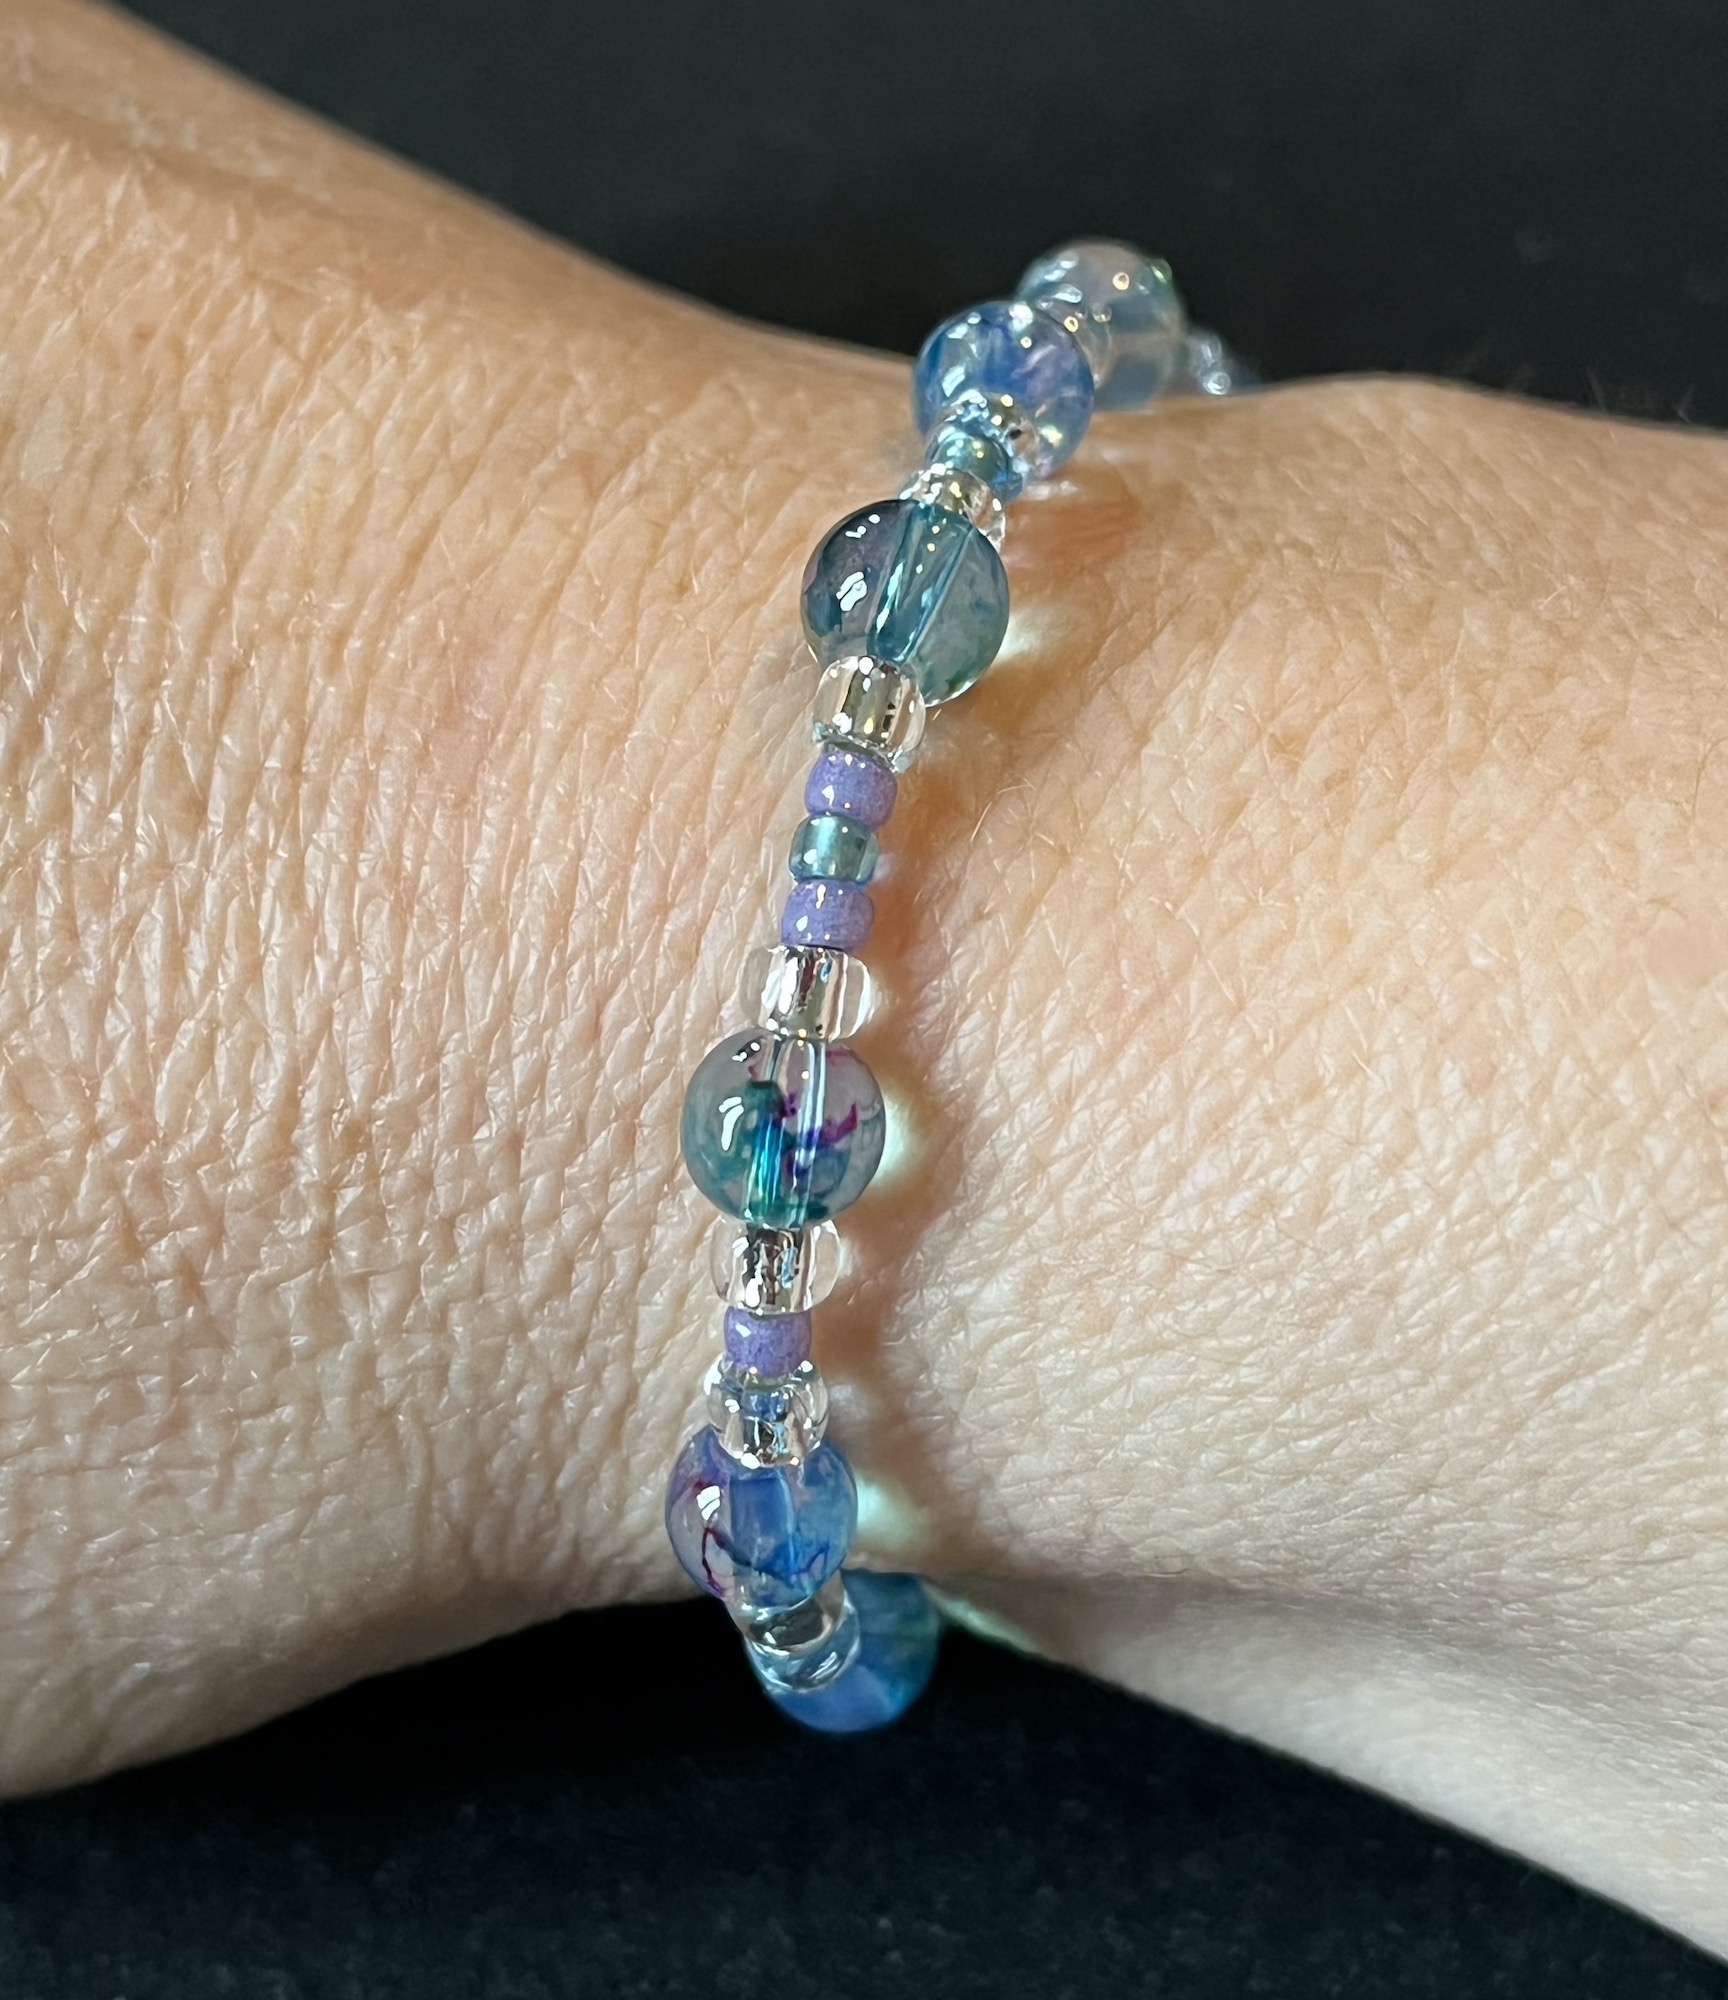 Marbled glass bracelet.